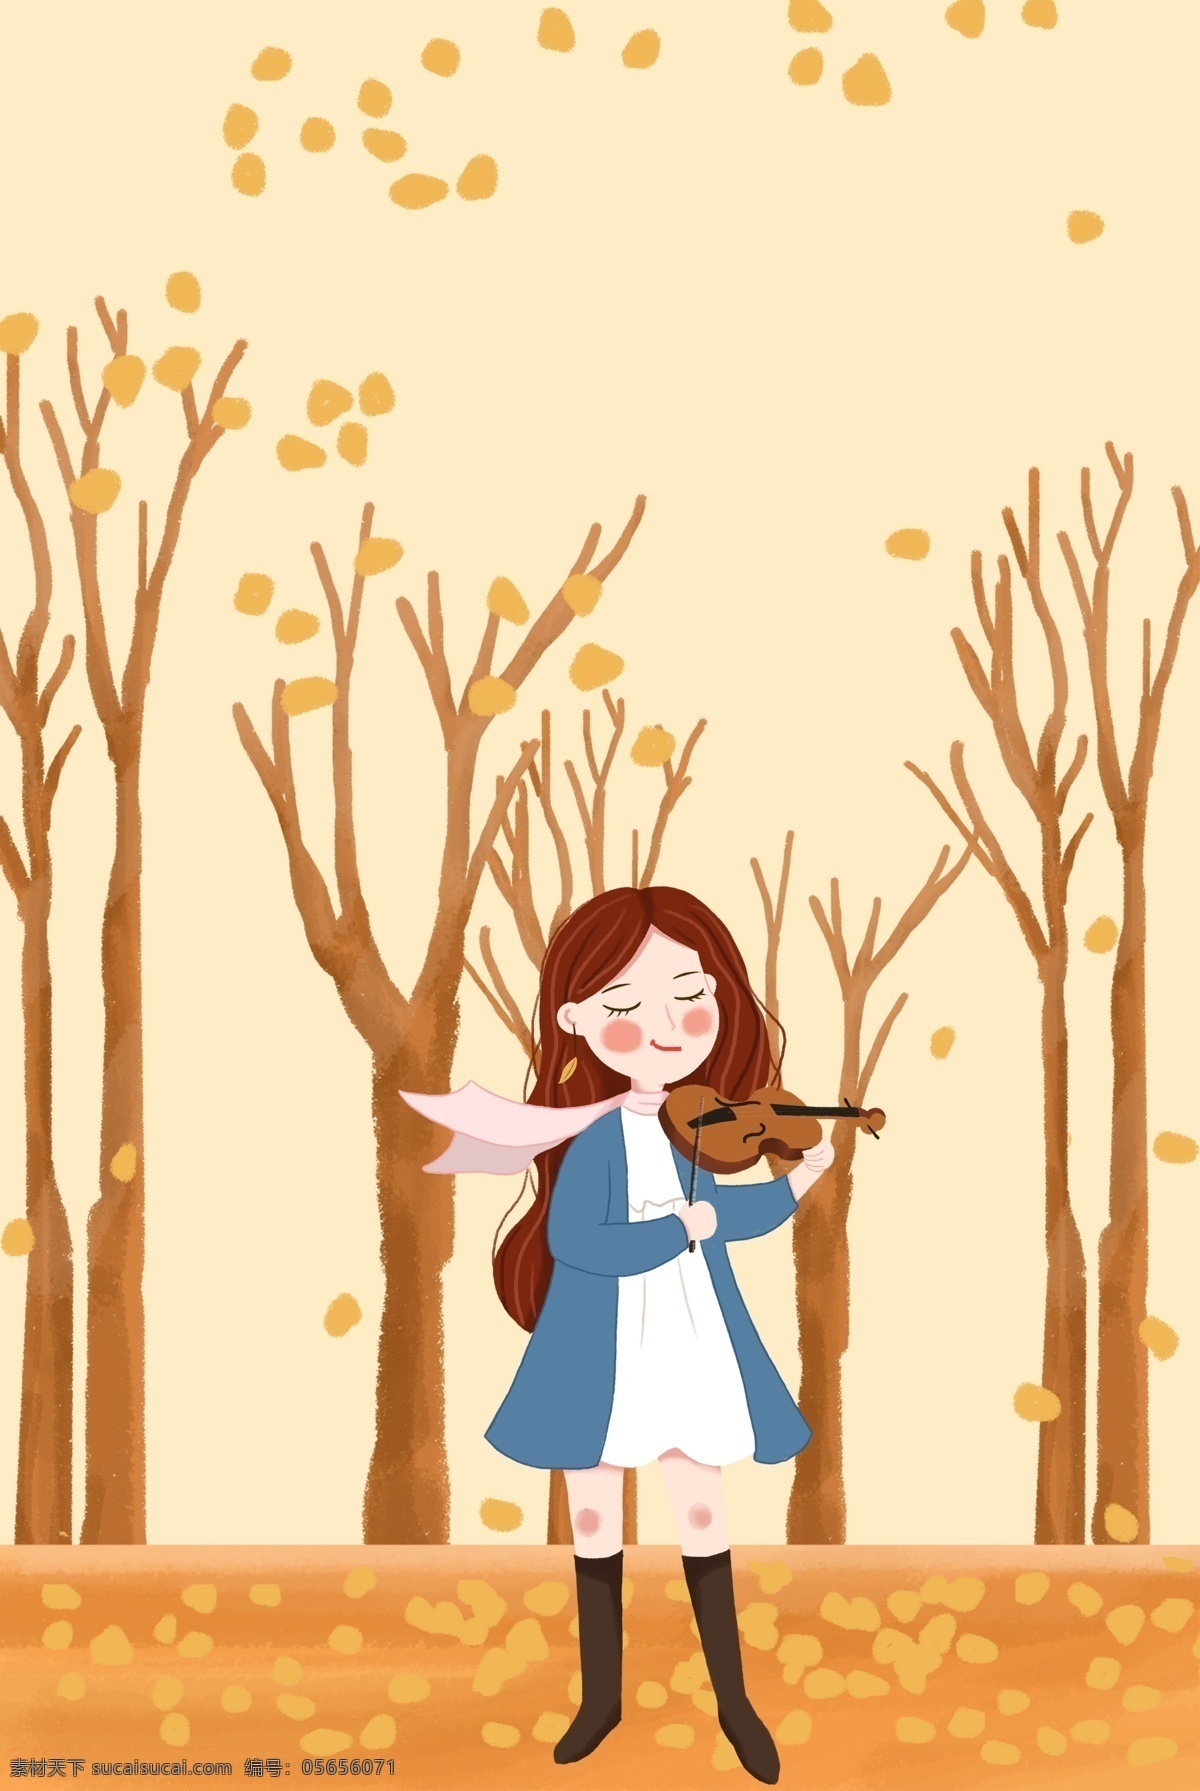 二十四节气 之秋 分 女孩 树林 里拉 小提琴 海报 秋分 落叶 秋天 手绘 简约 卡通 浪漫 音乐 背景